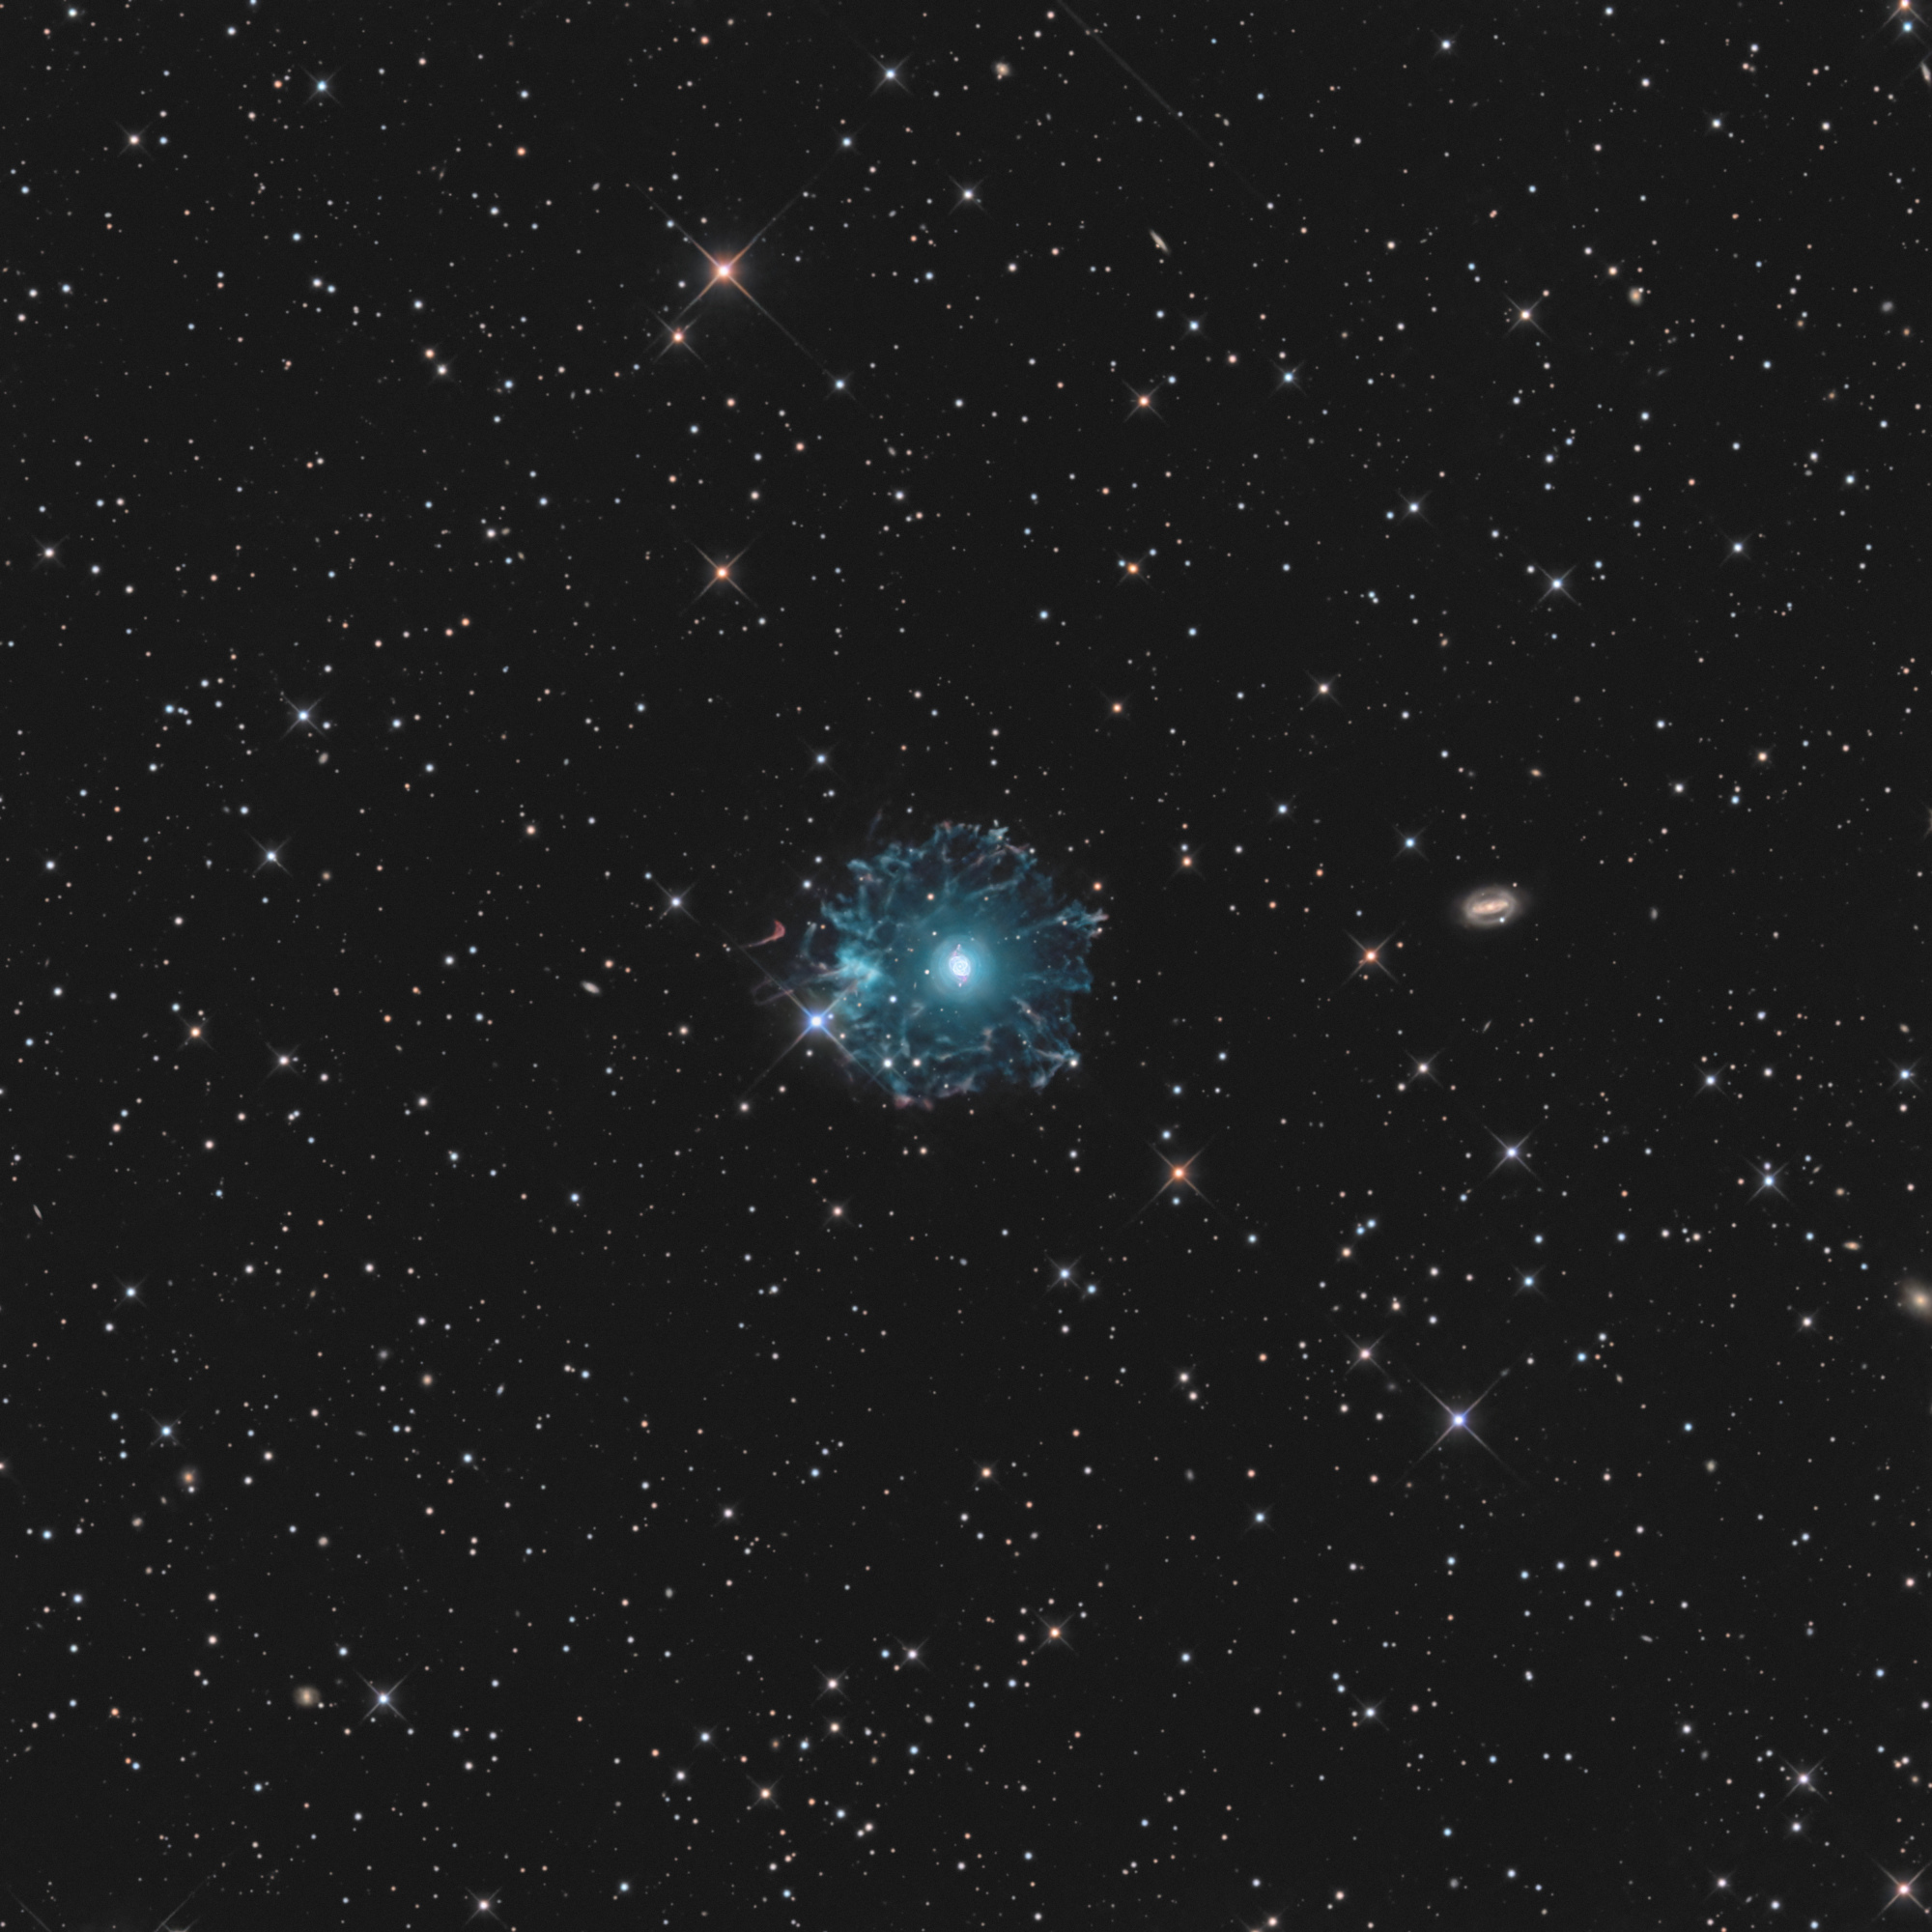 NGC-6543-LRVB-Final1-full.thumb.jpg.db6d7a2efc013fb0d31fe86754dbbef9.jpg